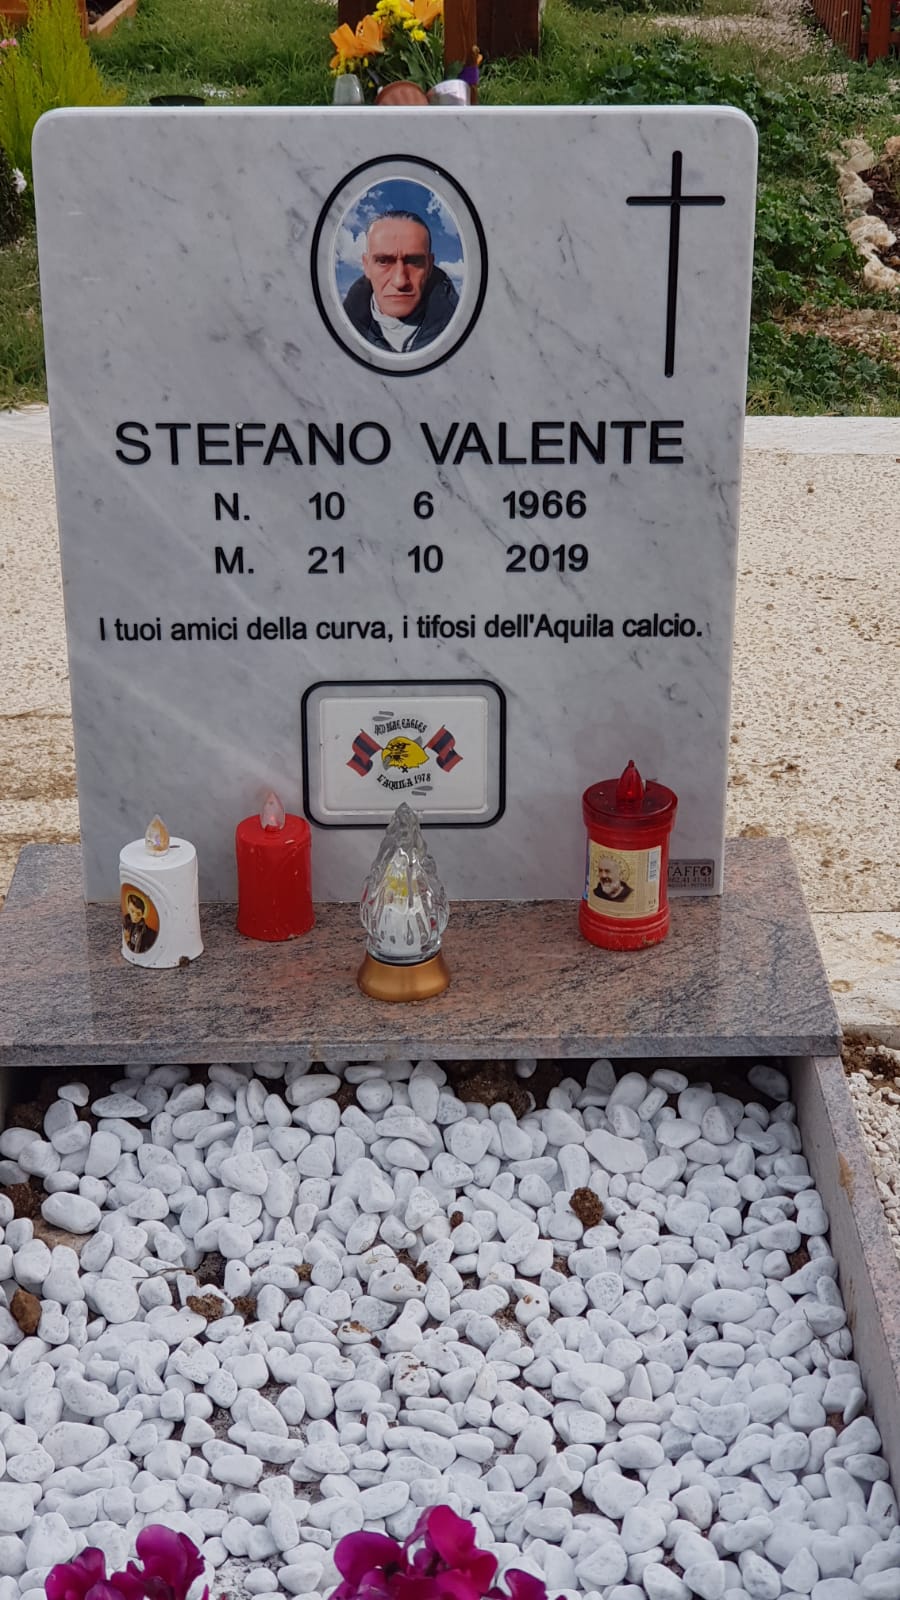 In memoria di Stefano Valente, lapide pagata grazie al contributo di tutti i ragazzi della curva e di tutti i tifosi, che ci hanno aiutato a dare una degna sepoltura a Stefano.